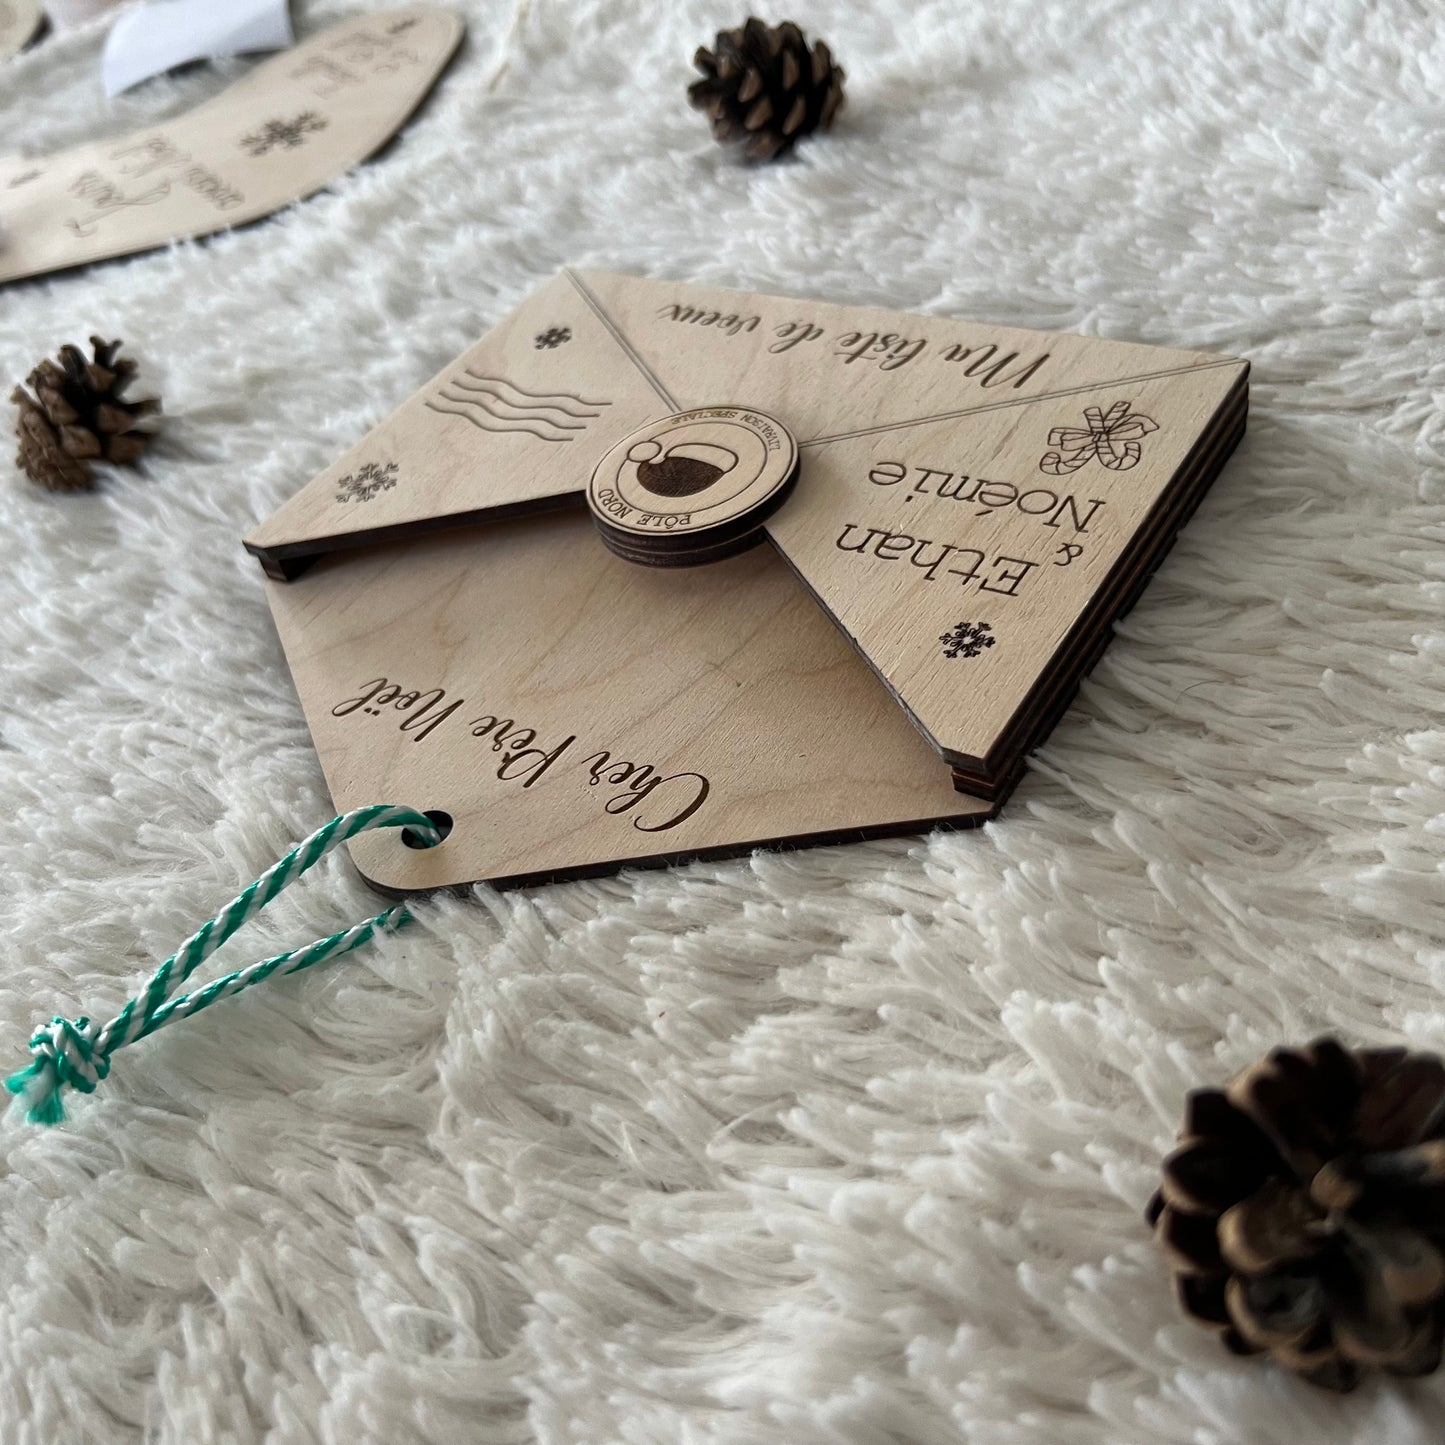 Enveloppe liste de cadeaux de Noël en bois personnalisée – Daron